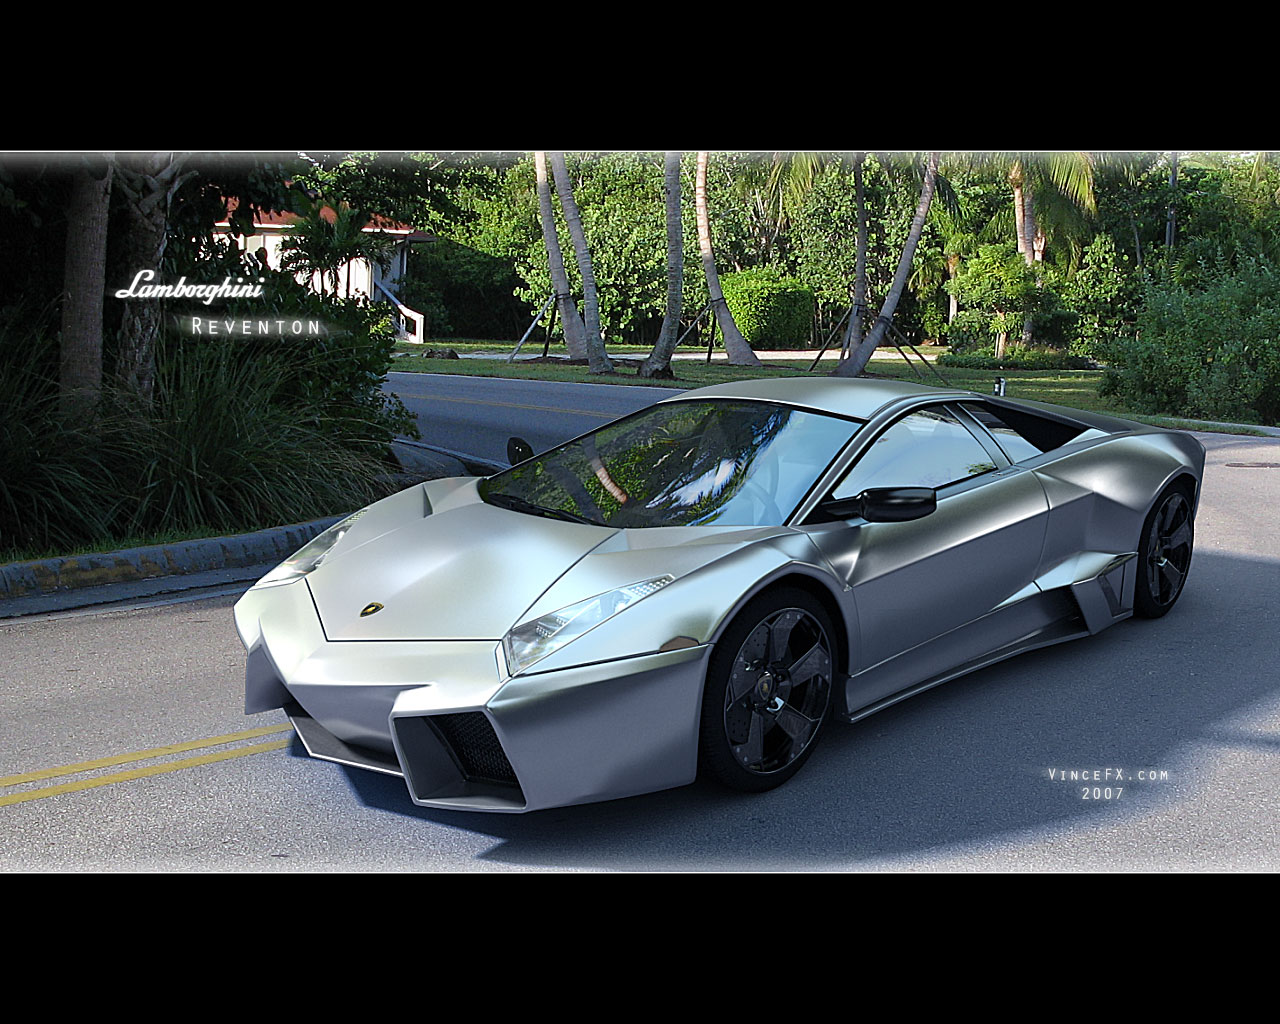 Top Ten Cars Lamborghini Revent N Wallpaper